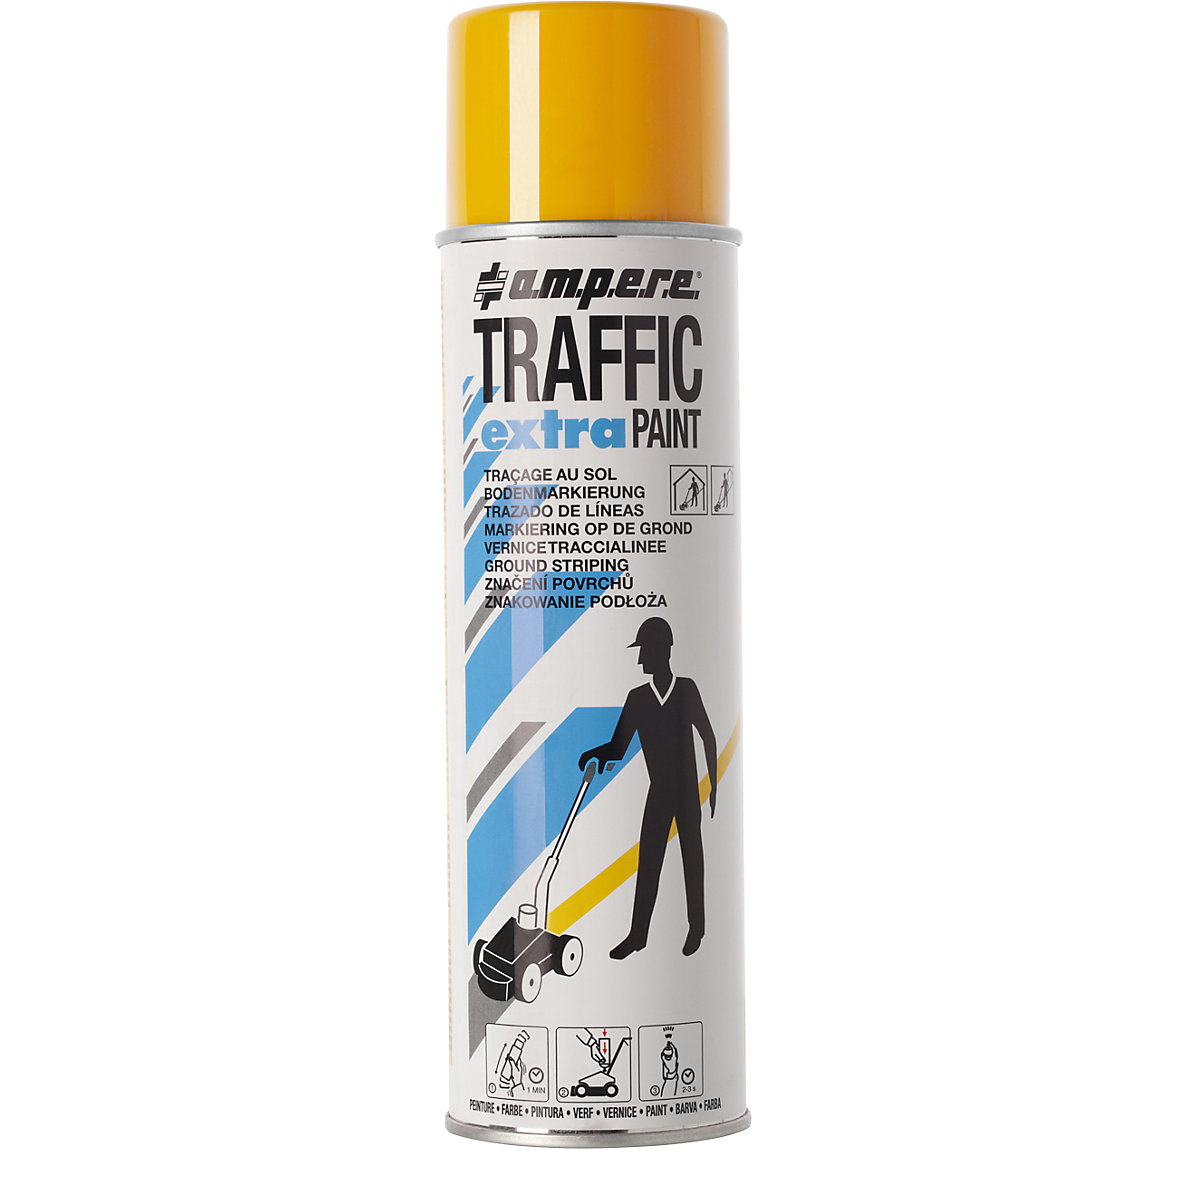 Markeerverf Traffic extra Paint® voor intensief gebruik – Ampere